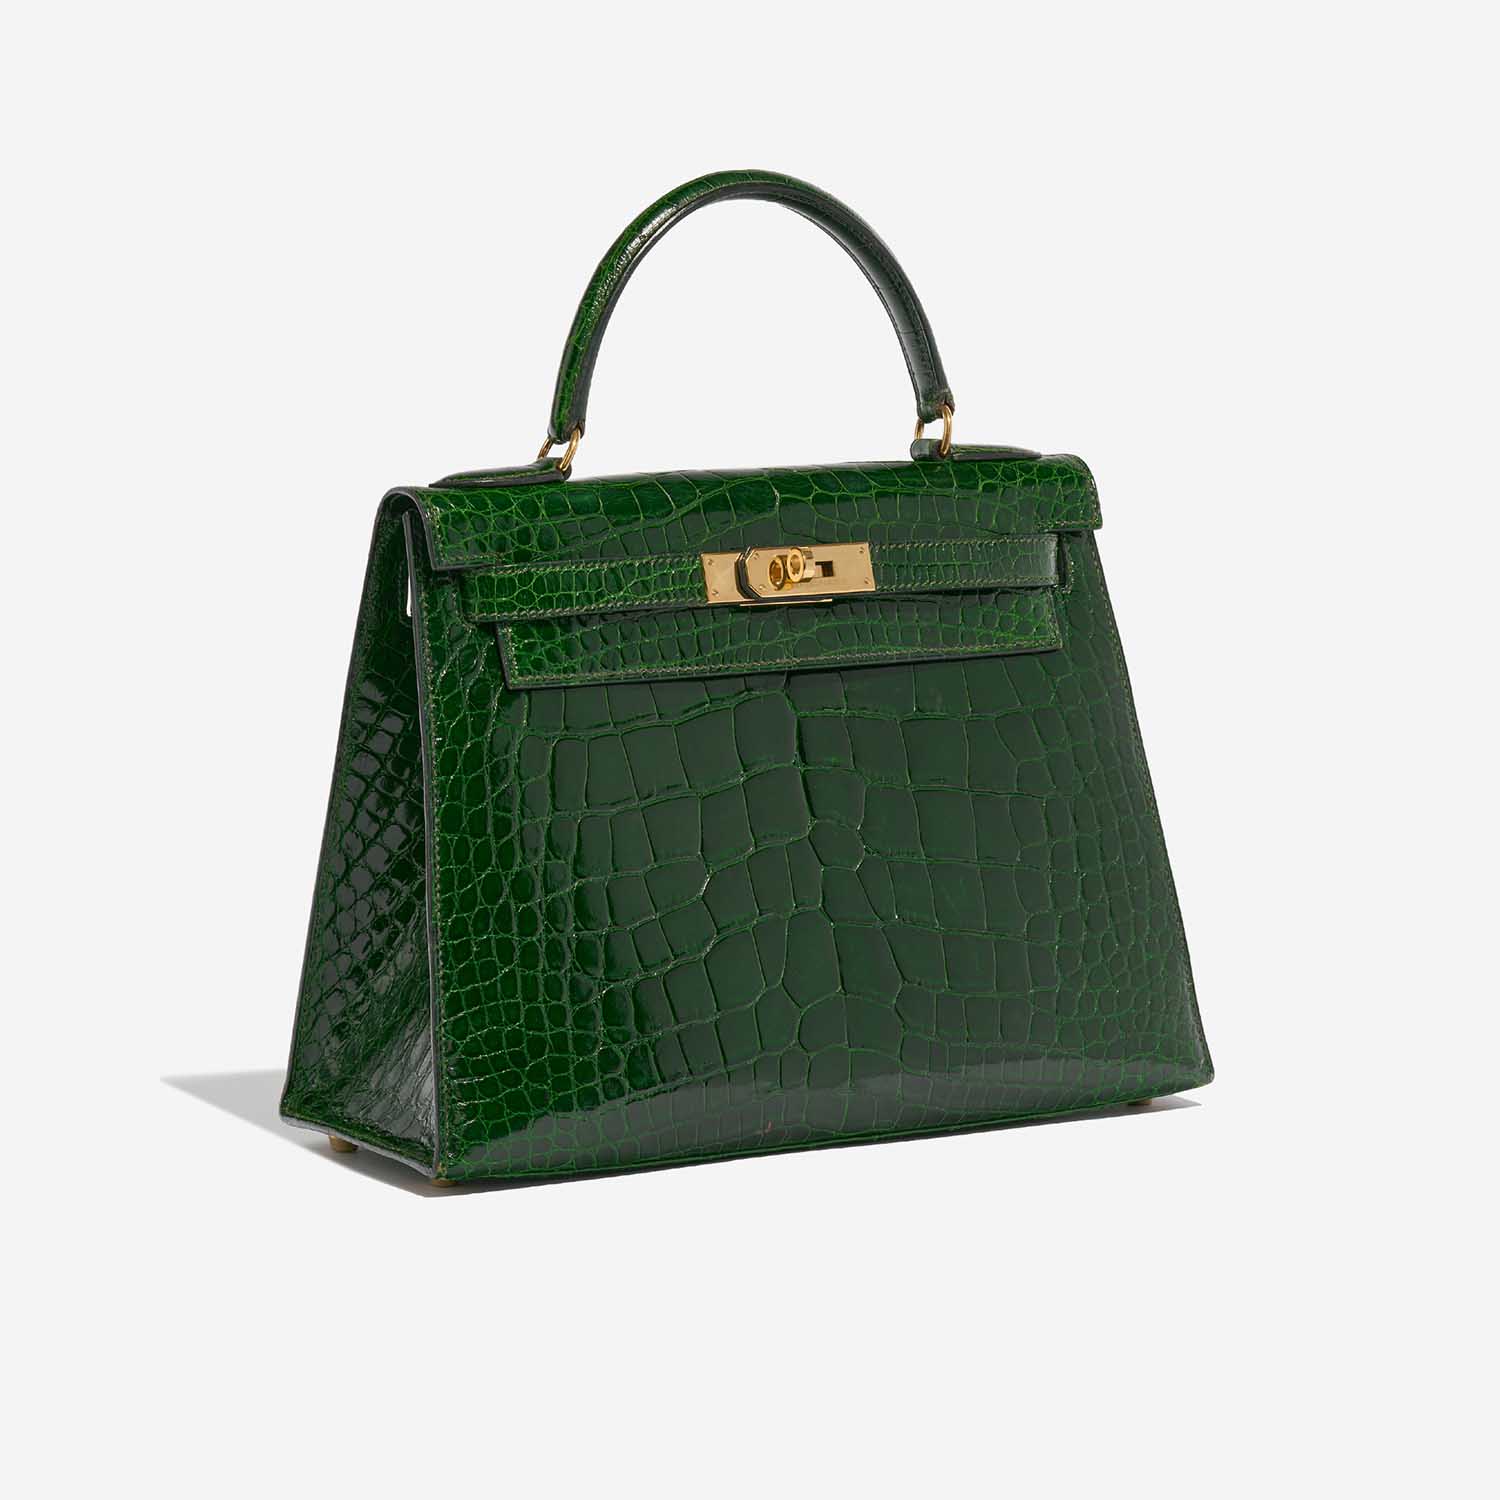 Pre-owned Hermès Tasche Kelly 28 Alligator Mississippiensis Vert Emeralde Grün Side Front | Verkaufen Sie Ihre Designer-Tasche auf Saclab.com